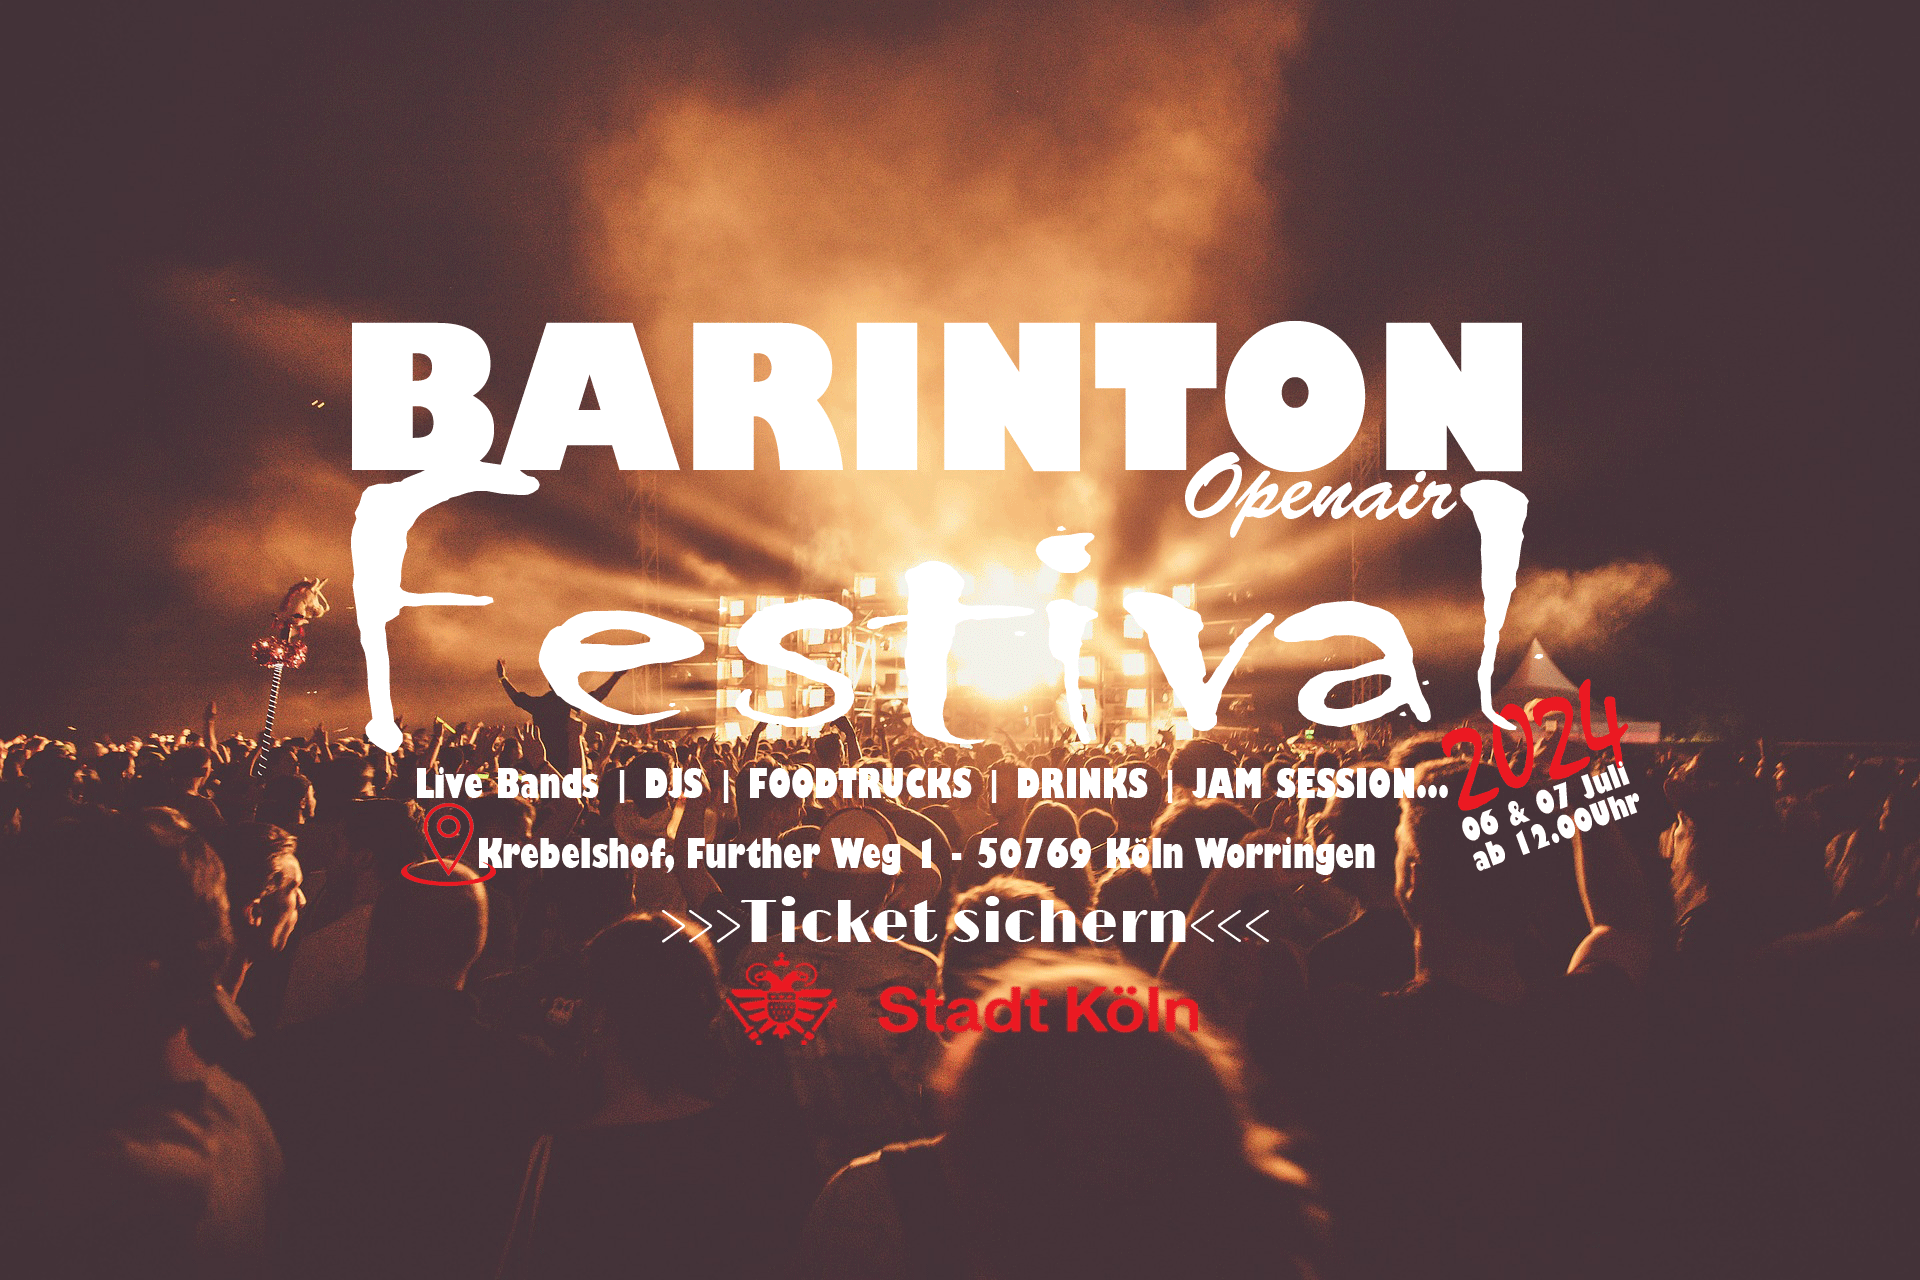 Barinton open Air Festival